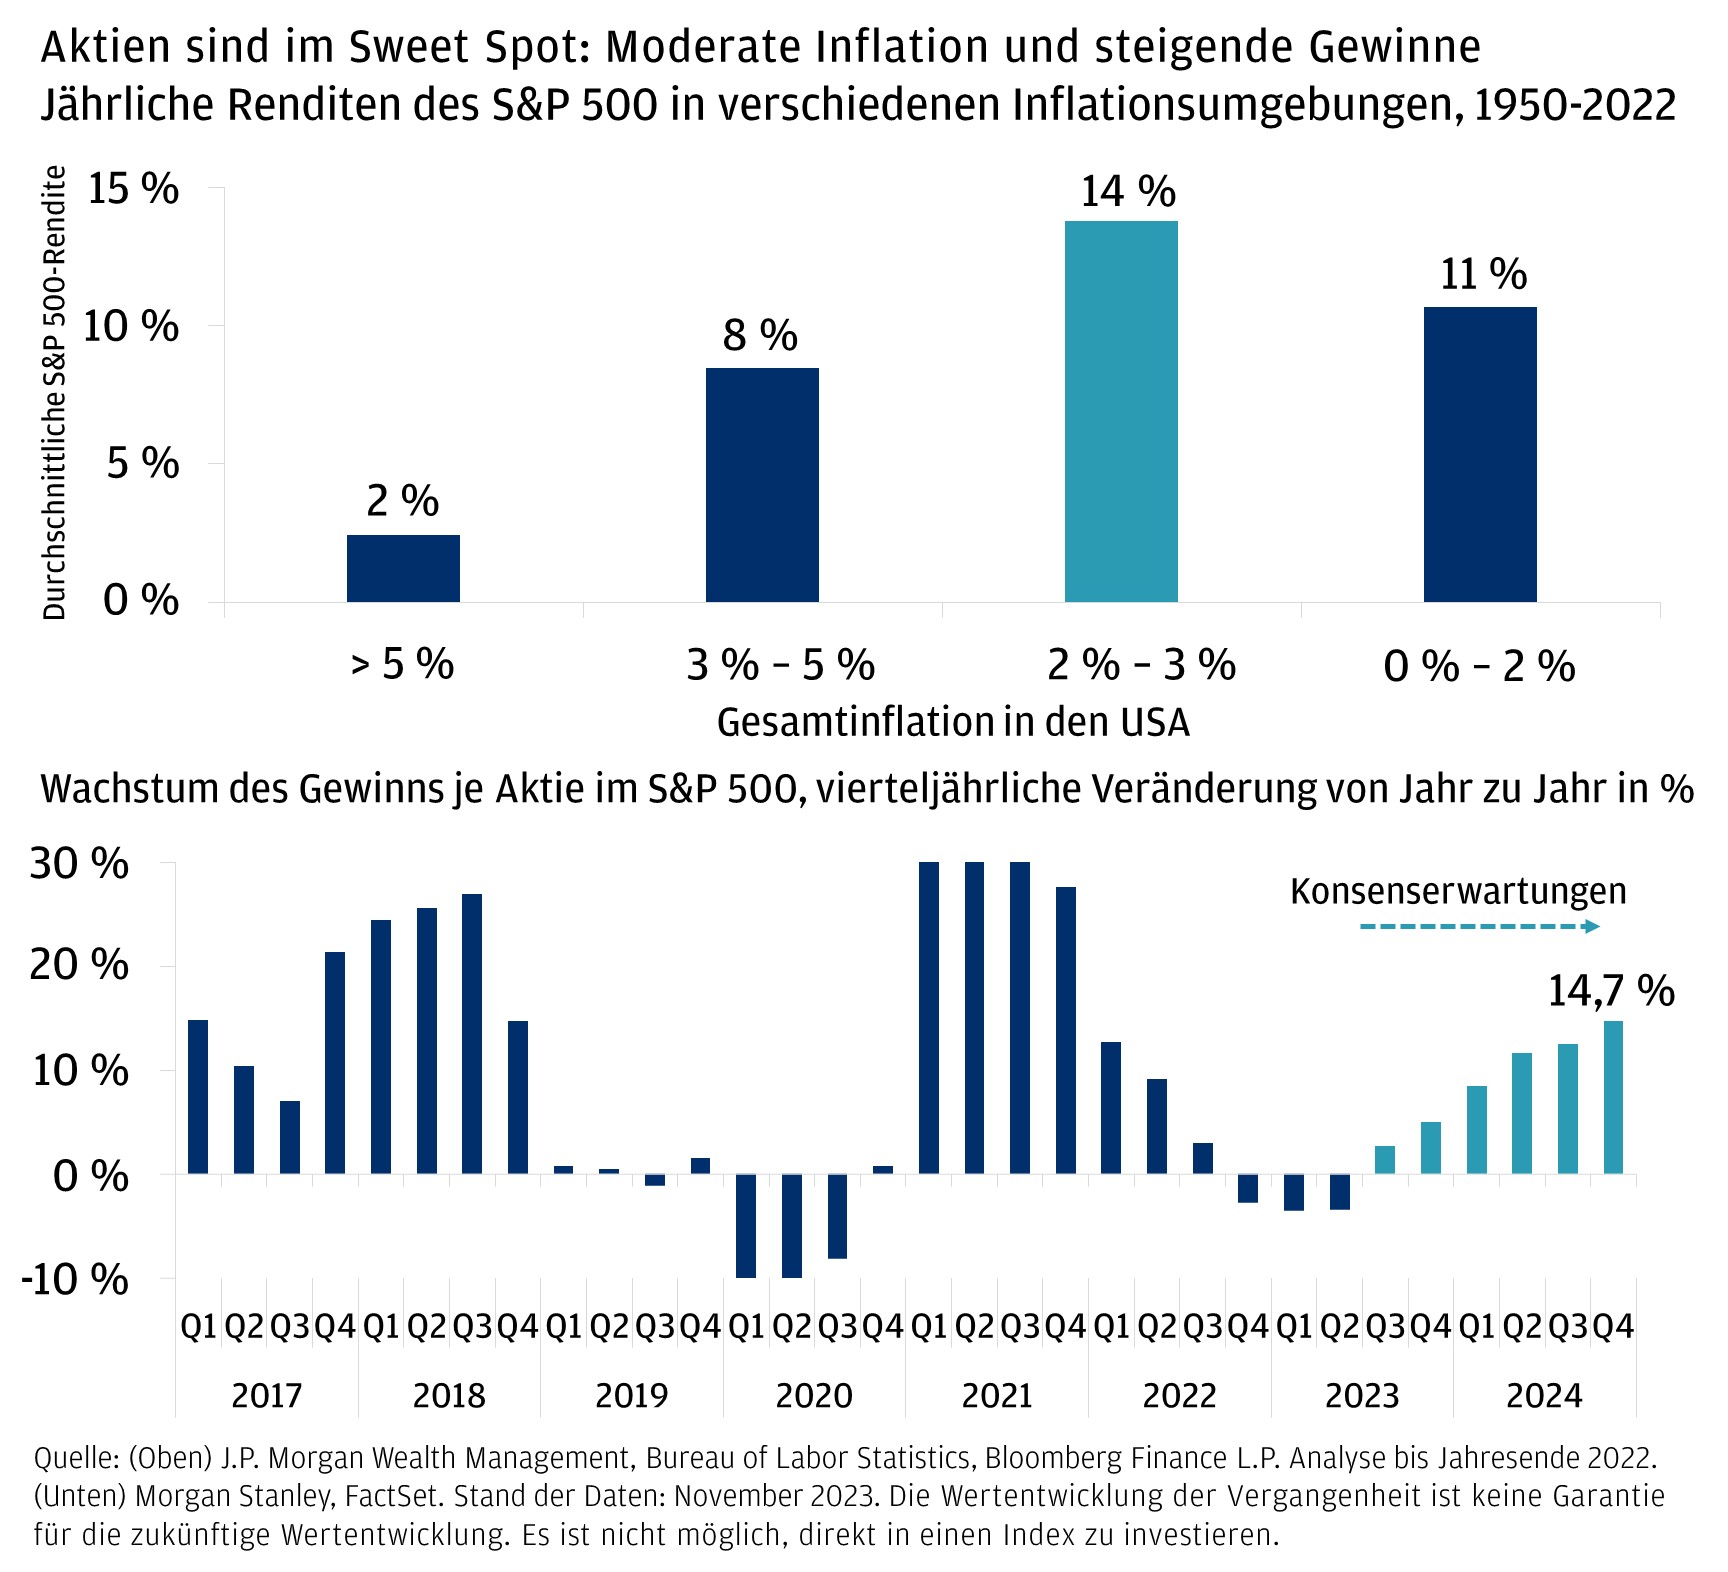 Das Diagramm zeigt zwei Grafiken, oben die jährlichen Renditen des S&P 500 in verschiedenen Inflationsumgebungen von 1950–2022. Das untere Diagramm zeigt das Wachstum des Gewinns je Aktie (EPS) im S&P 500 als prozentuale Veränderung im Jahresvergleich seit 2017.